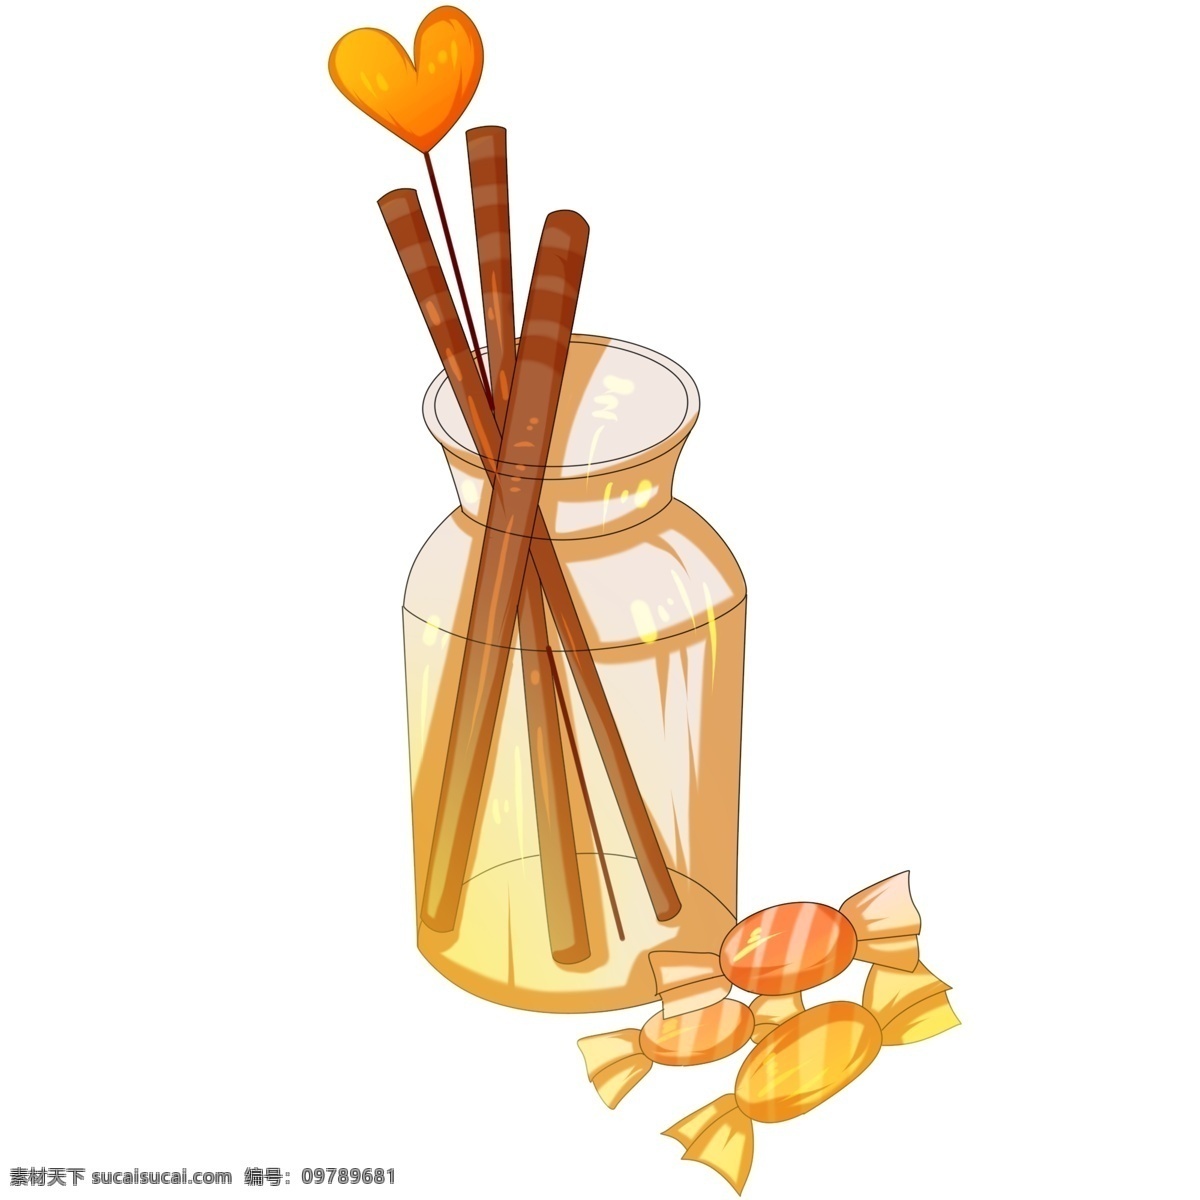 手绘 卡通 糖果 插画 手绘糖果 卡通糖果 爱心糖果插画 情人节 装饰 瓶子里的筷子 美味的糖果 红色爱心